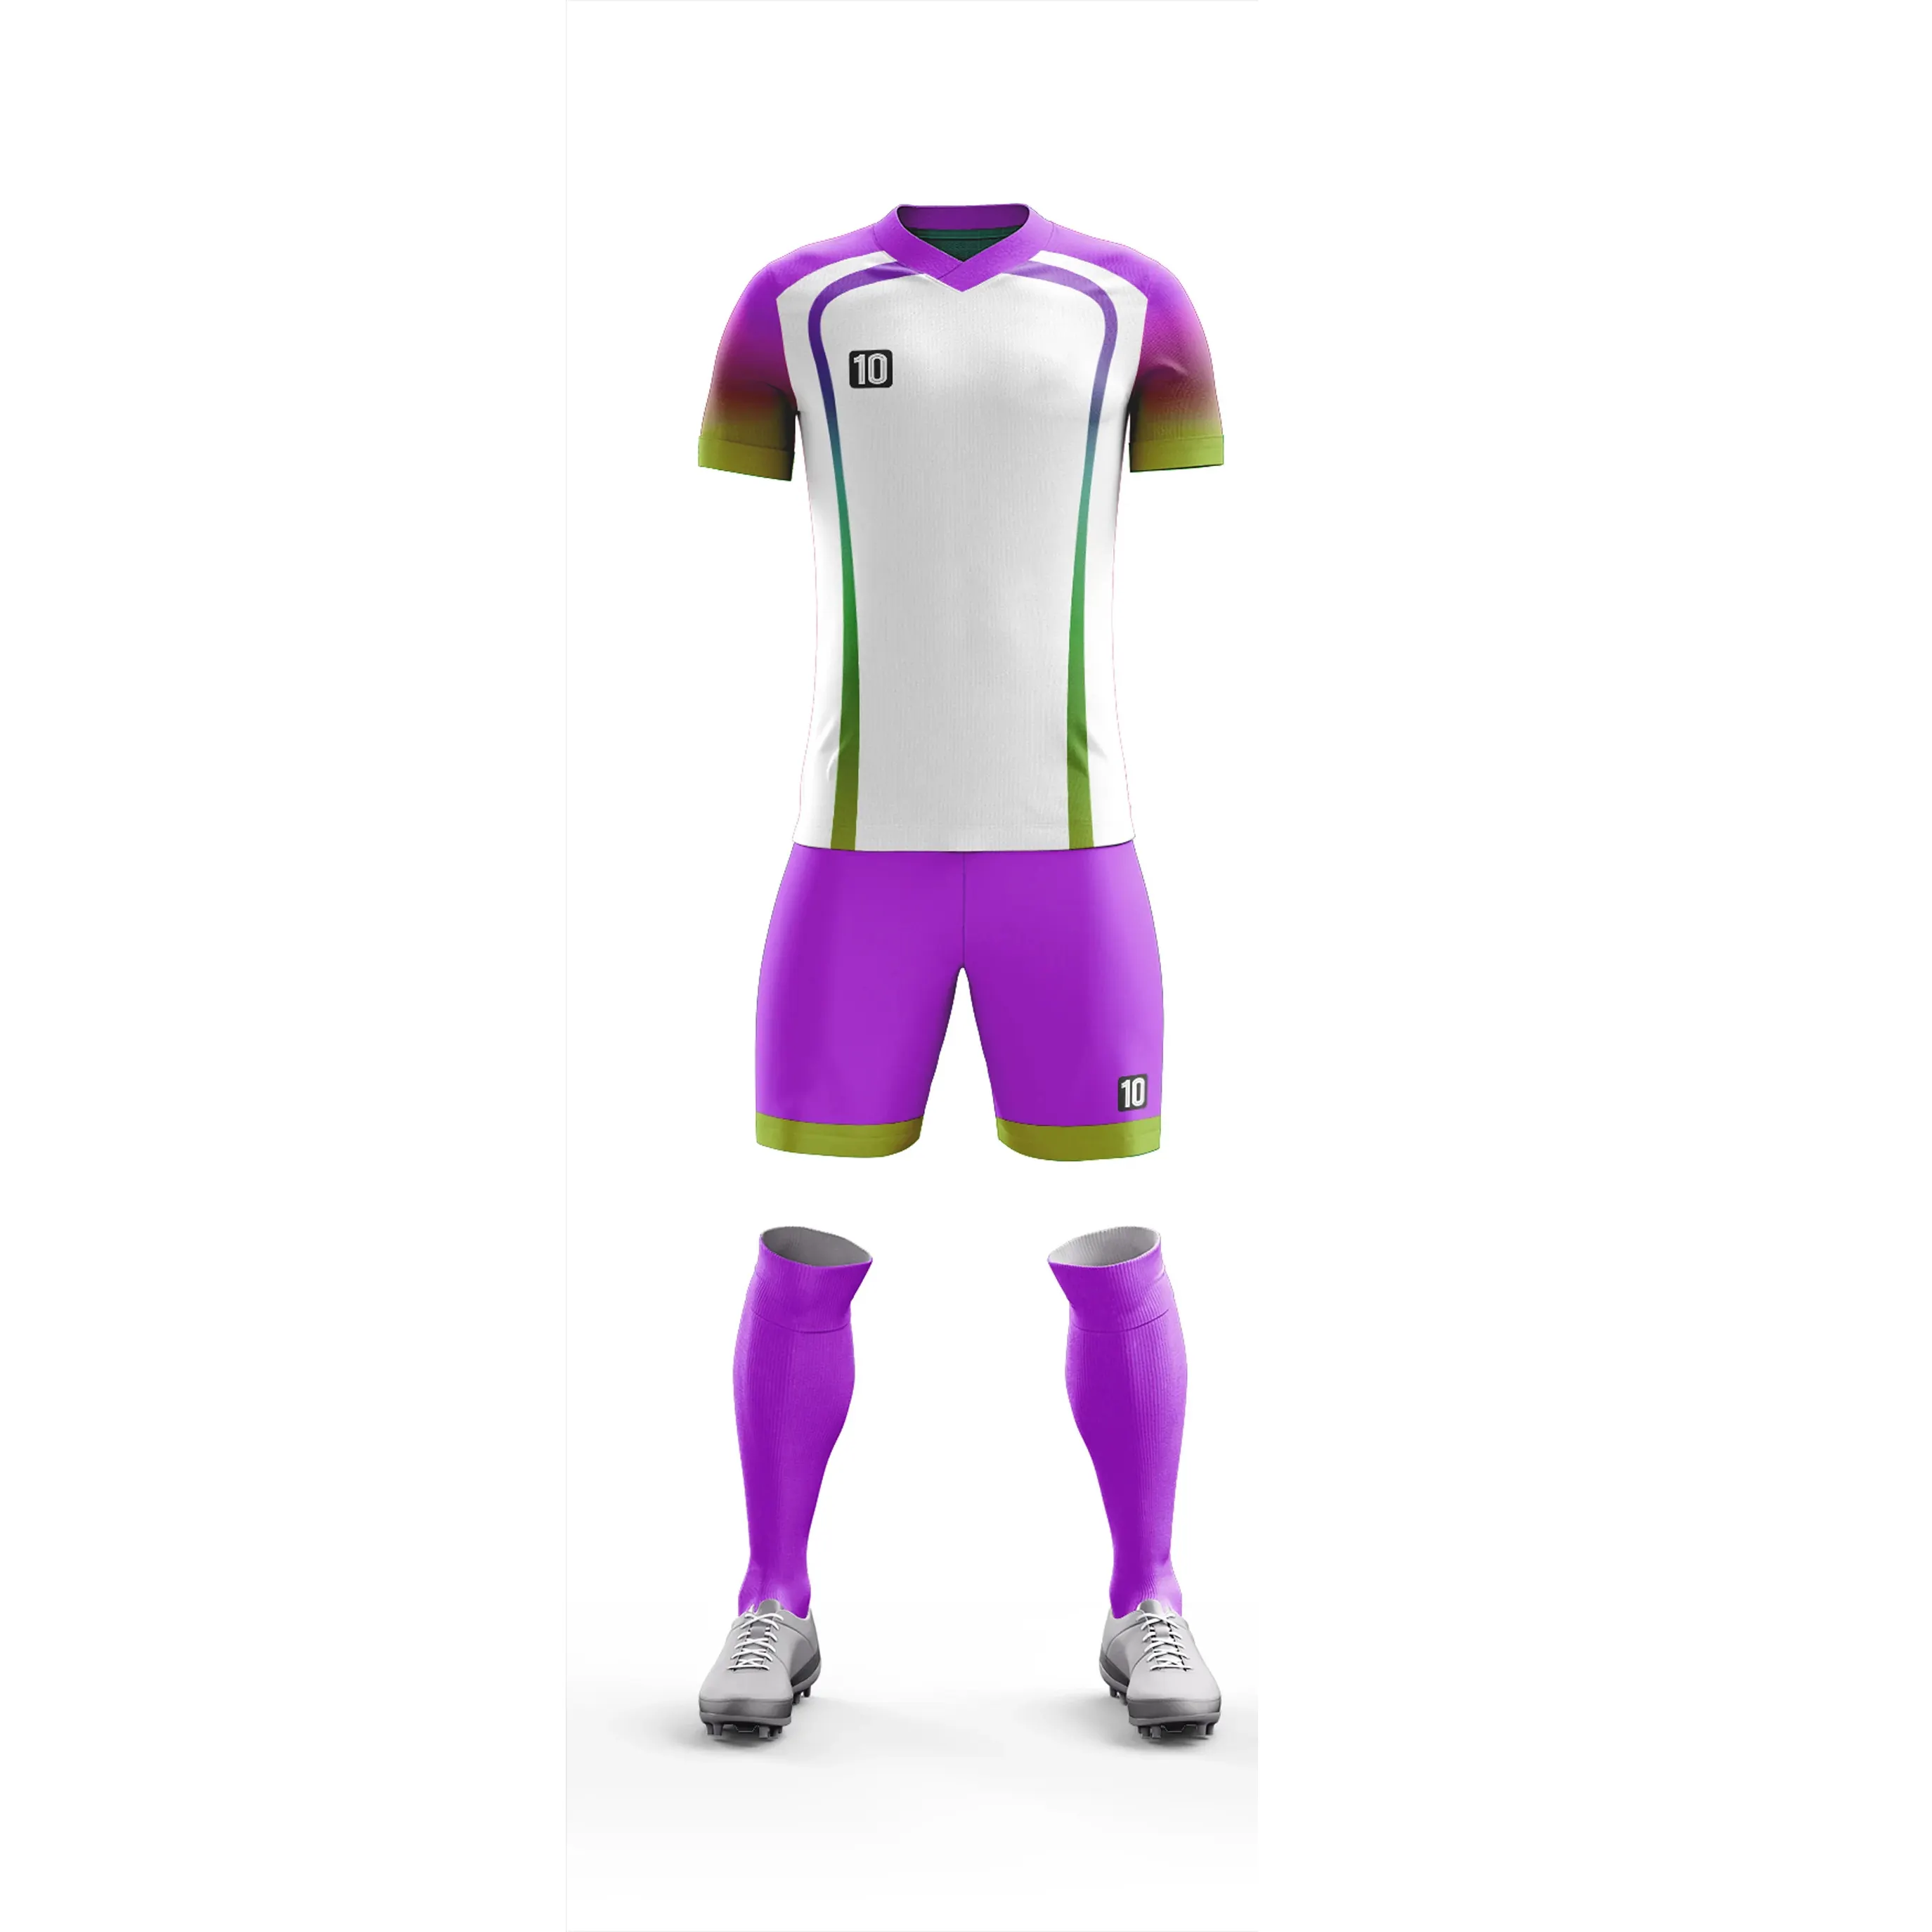 Vente en gros d'usine d'uniformes d'équipe personnalisés bon marché uniformes de football design personnalisé vêtements de football pour hommes et femmes